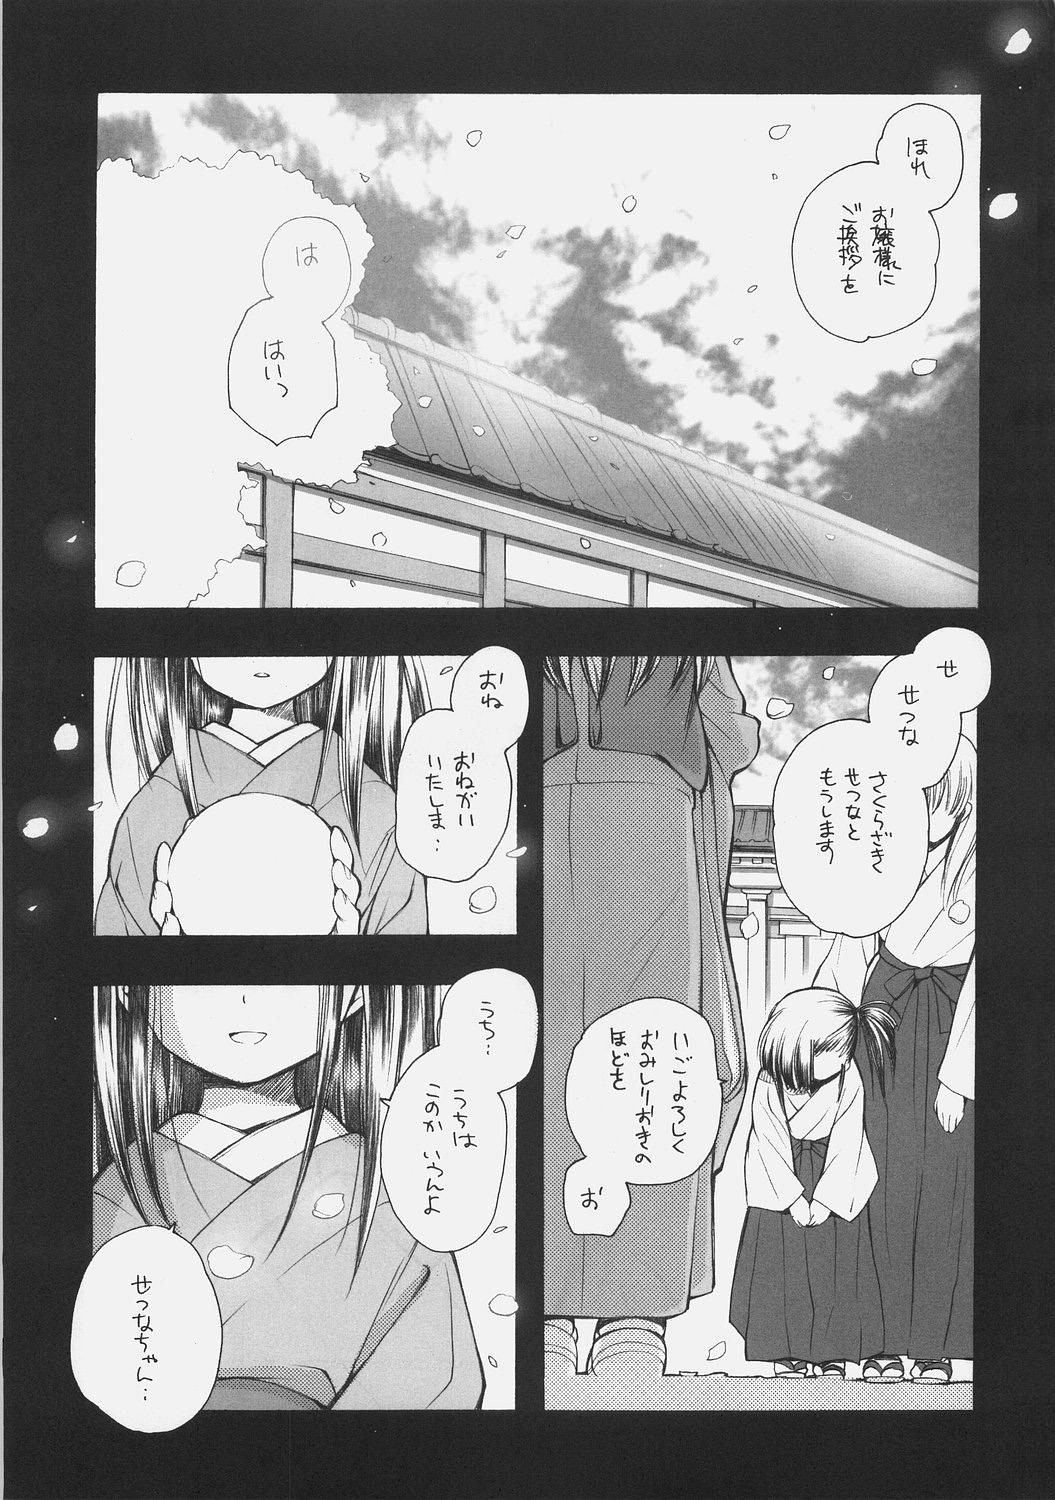 Pregnant KonoSetsu - Mahou sensei negima Star - Page 2